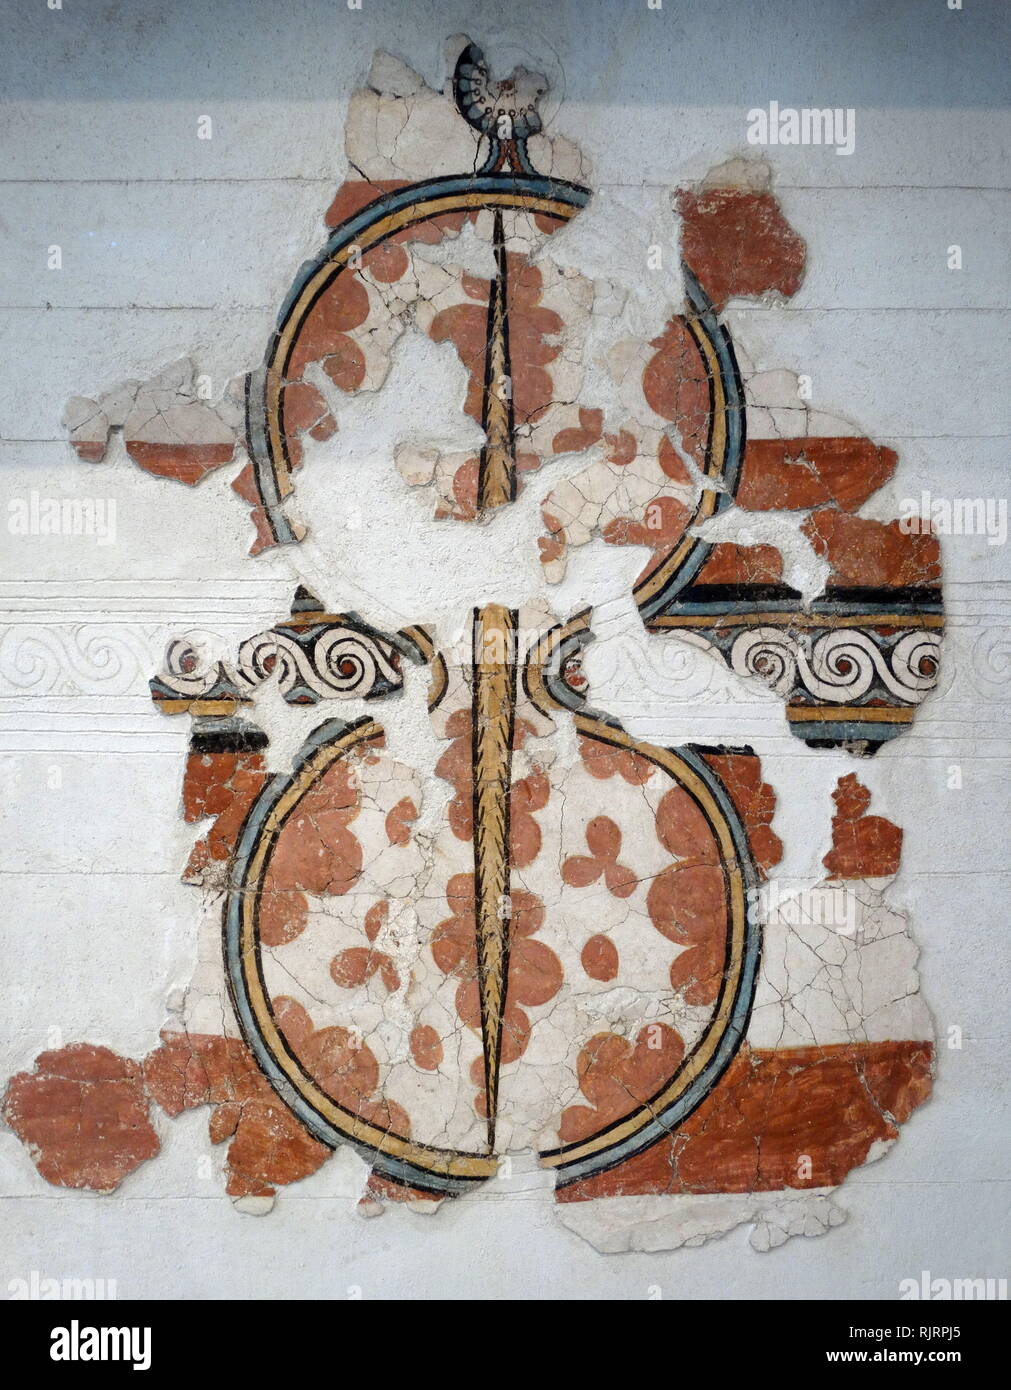 Mykenische Fresken Wandgemälde einer Abbildung von acht Schild. Mykene Akropolis, Griechenland, 14. - 13. Jahrhundert v. Chr. Stockfoto